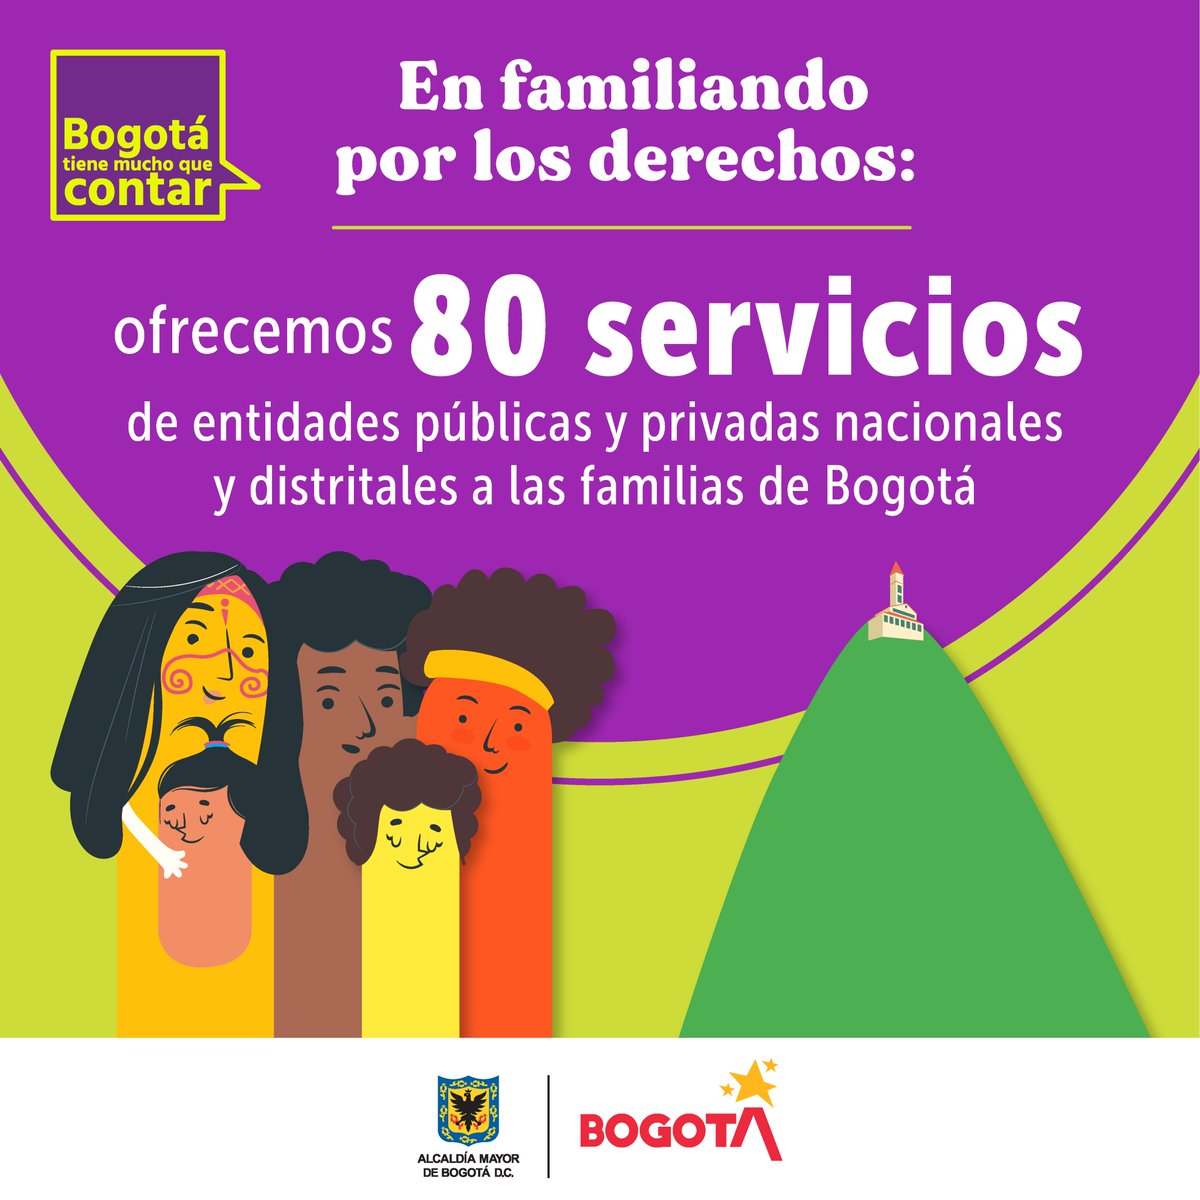 👉El portafolio de servicios para las familias de Bogotá está enfocado en que sus integrantes tengan una vida libre de violencias, donde se promueva la unidad, el goce de la intimidad, una vivienda digna y seguridad económica.
 
Ver más 👀bit.ly/FamiliandoPorL…
#SacaLoMejorDeTi